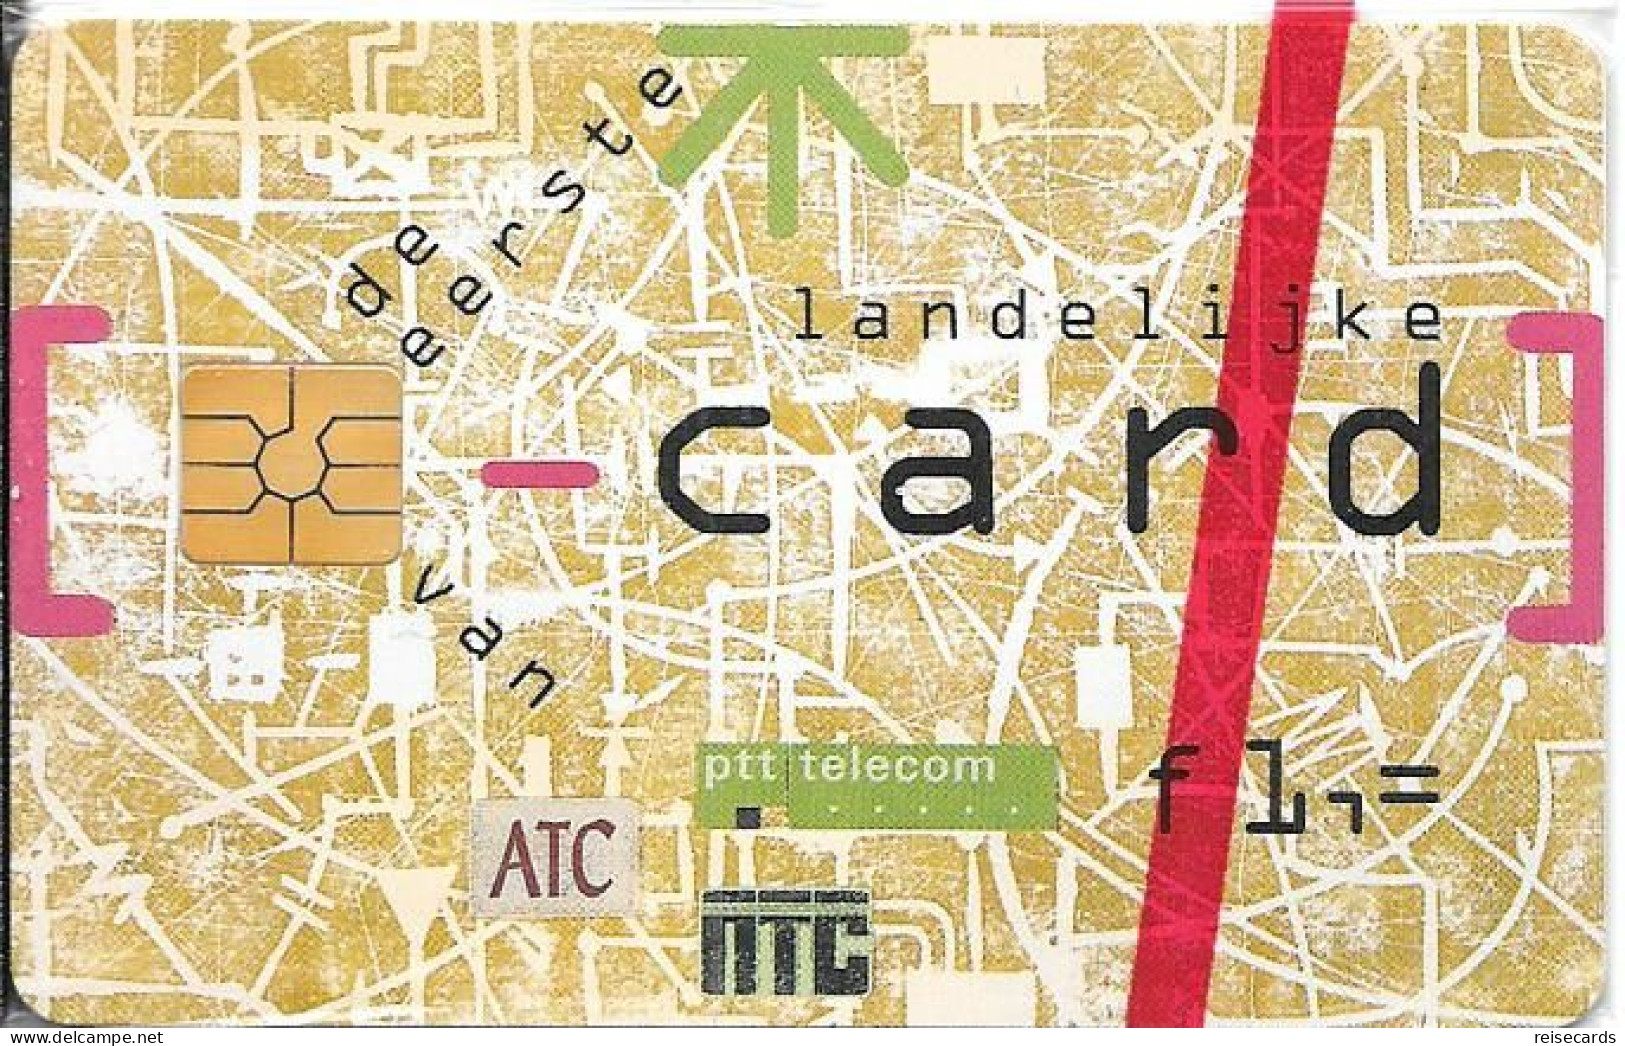 Netherlands: Ptt Telecom - 1994 De Eerste Landelijke Card Van ATC NTC. Mint - öffentlich